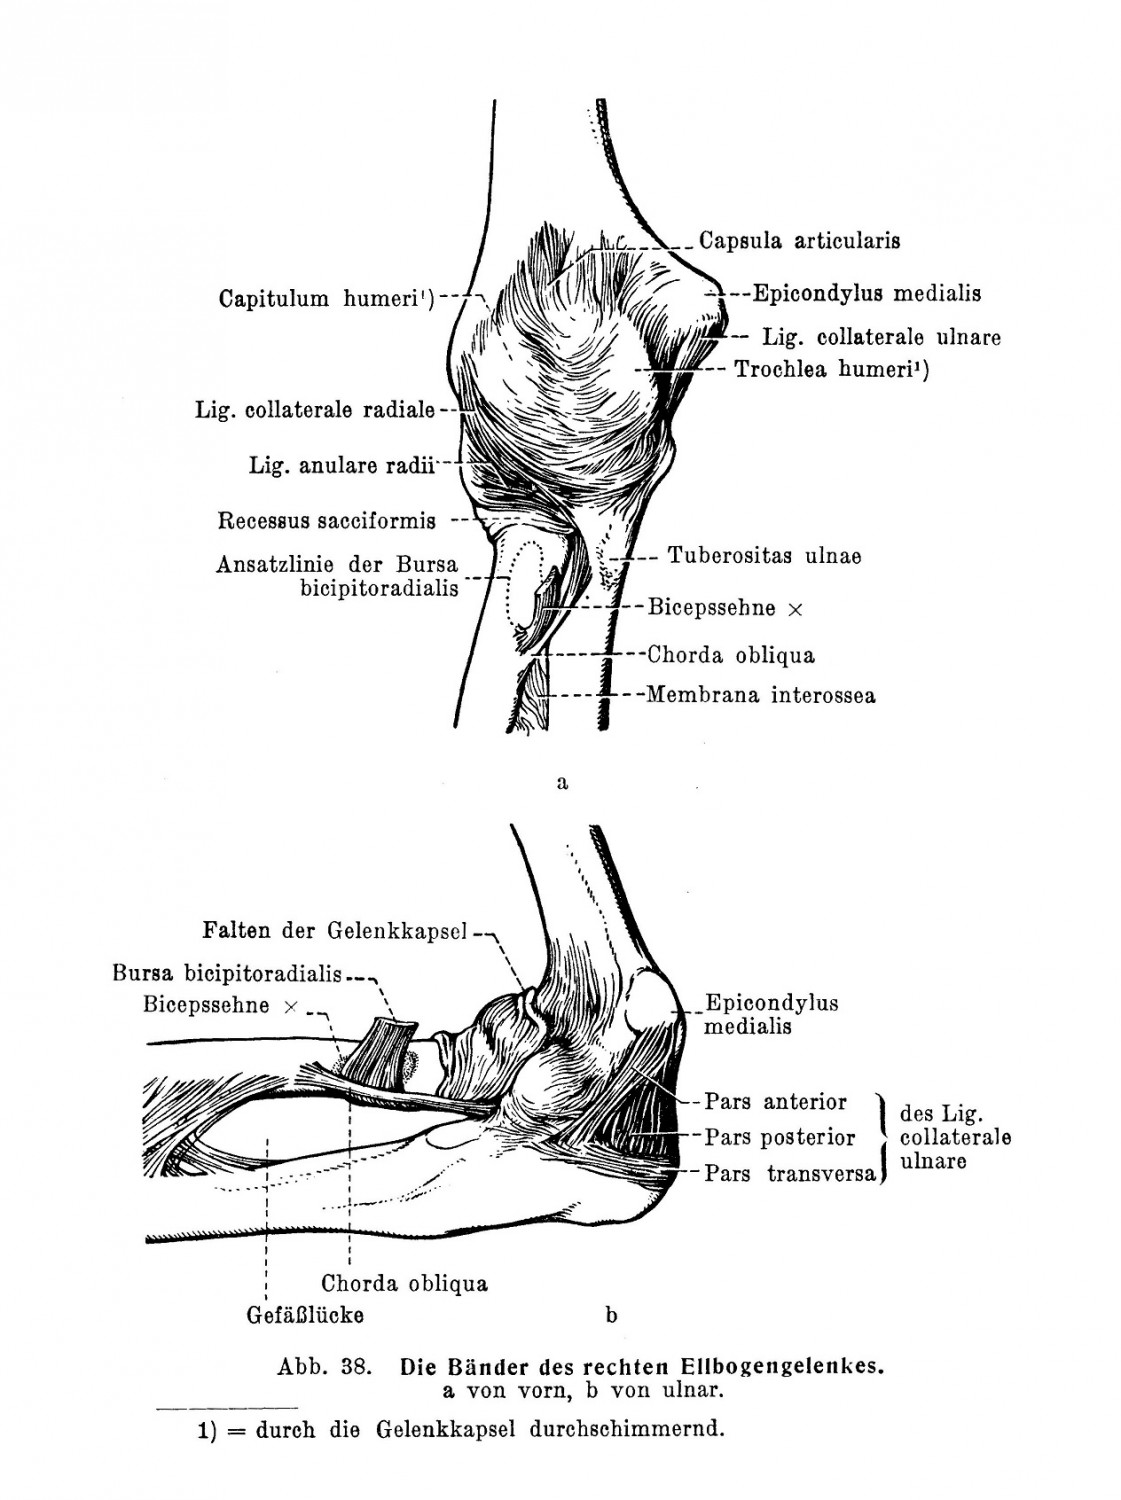 Ein besonderer Verbindungsstrang der beiden Knochen ist die Schrägseite, Chorda obliqua 